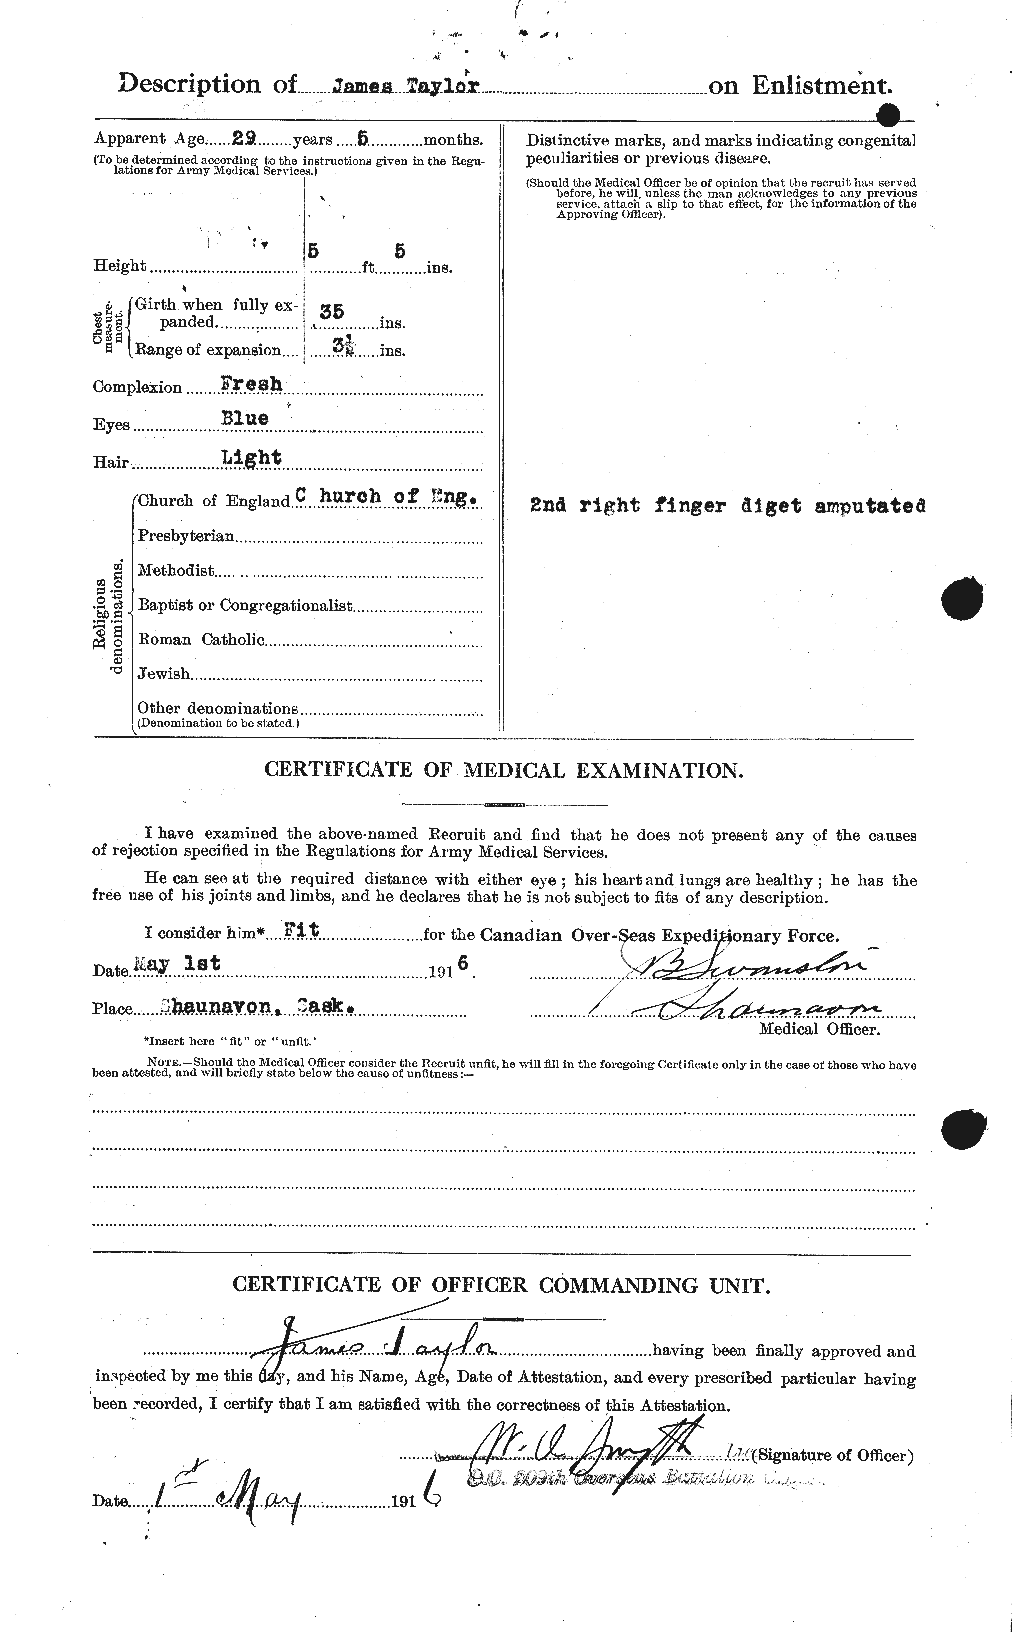 Dossiers du Personnel de la Première Guerre mondiale - CEC 626691b